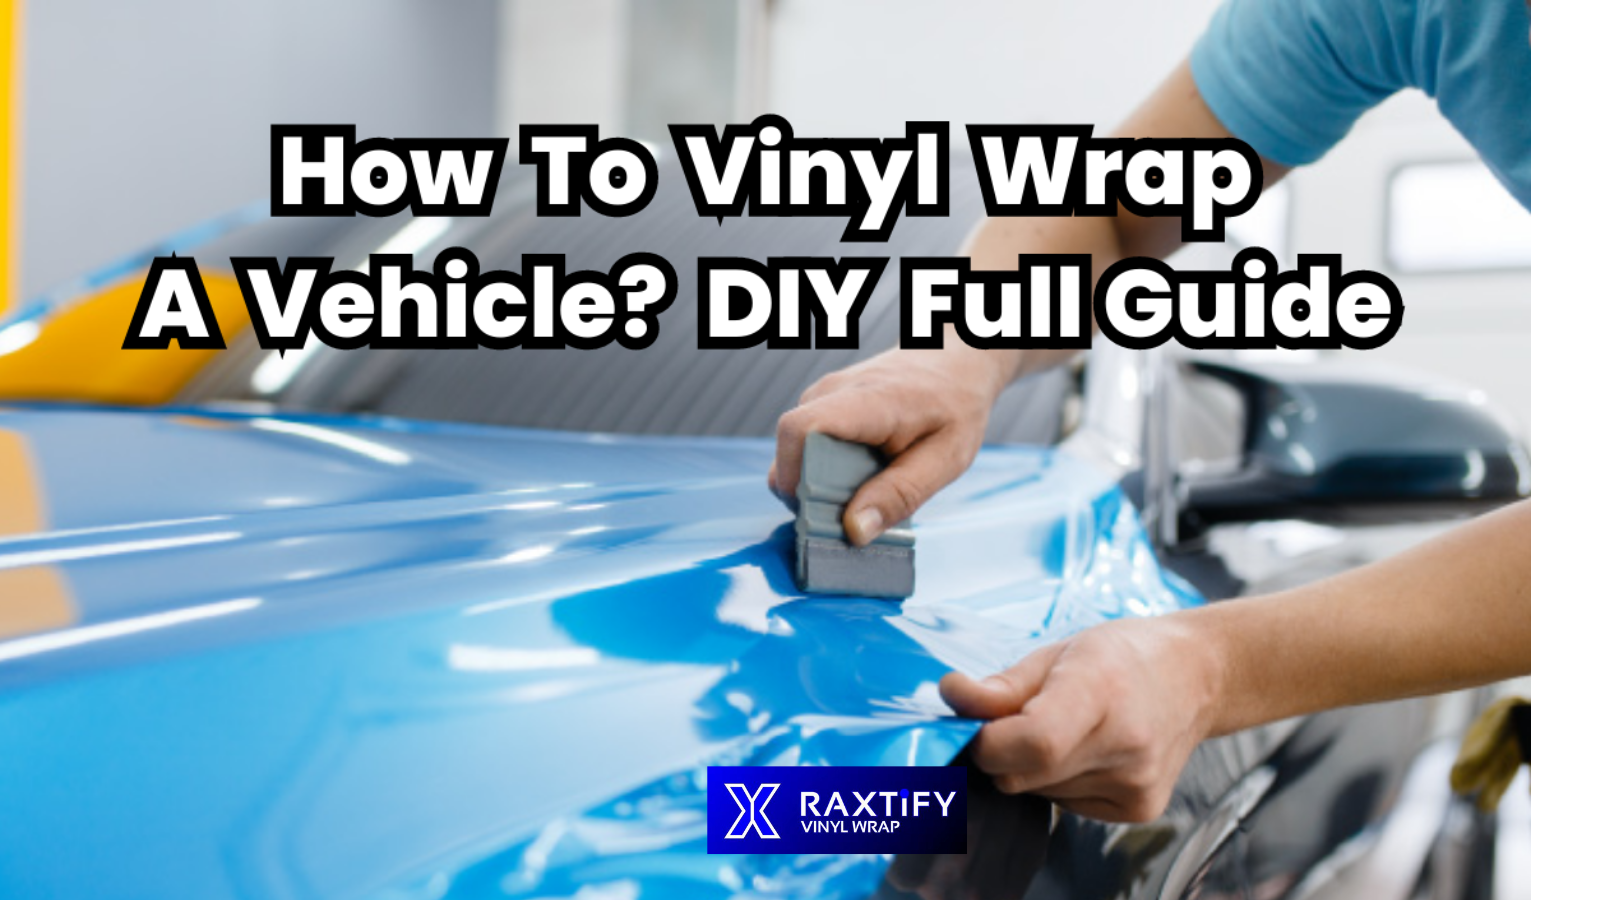 how-to-vinyl-wrap-a-car-details-diy-guide